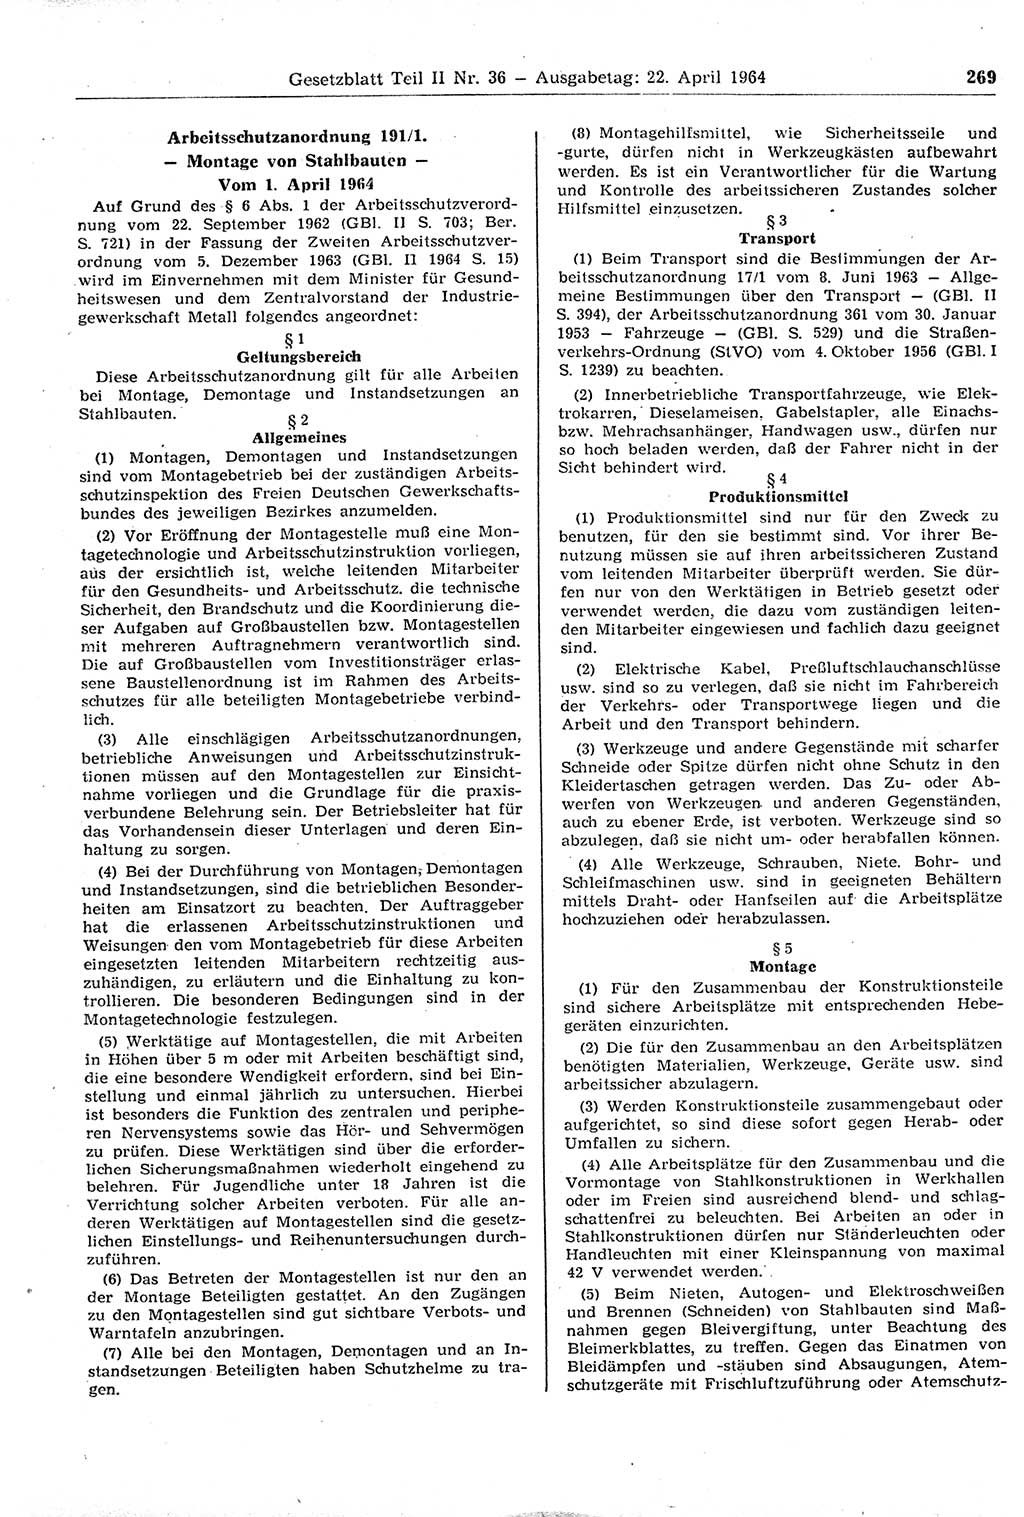 Gesetzblatt (GBl.) der Deutschen Demokratischen Republik (DDR) Teil ⅠⅠ 1964, Seite 269 (GBl. DDR ⅠⅠ 1964, S. 269)